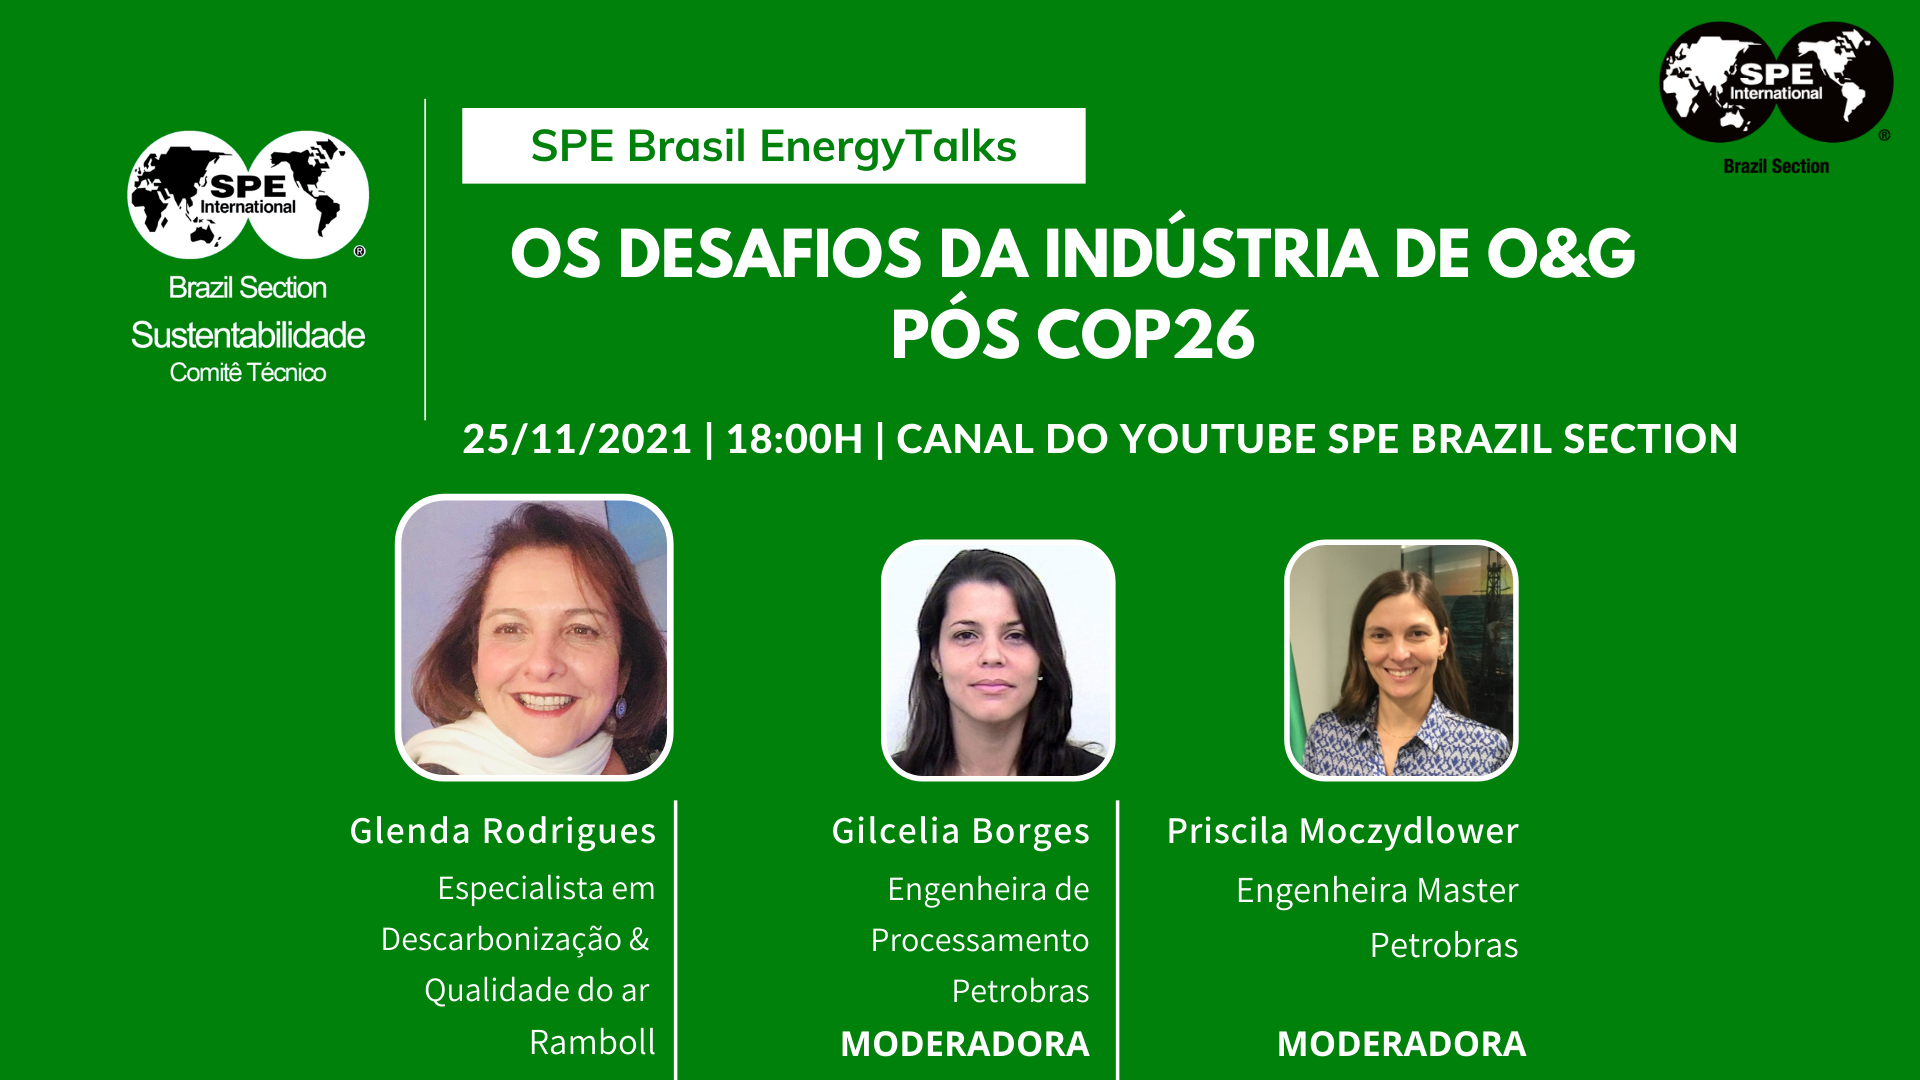 Energy Brasil Oficial 